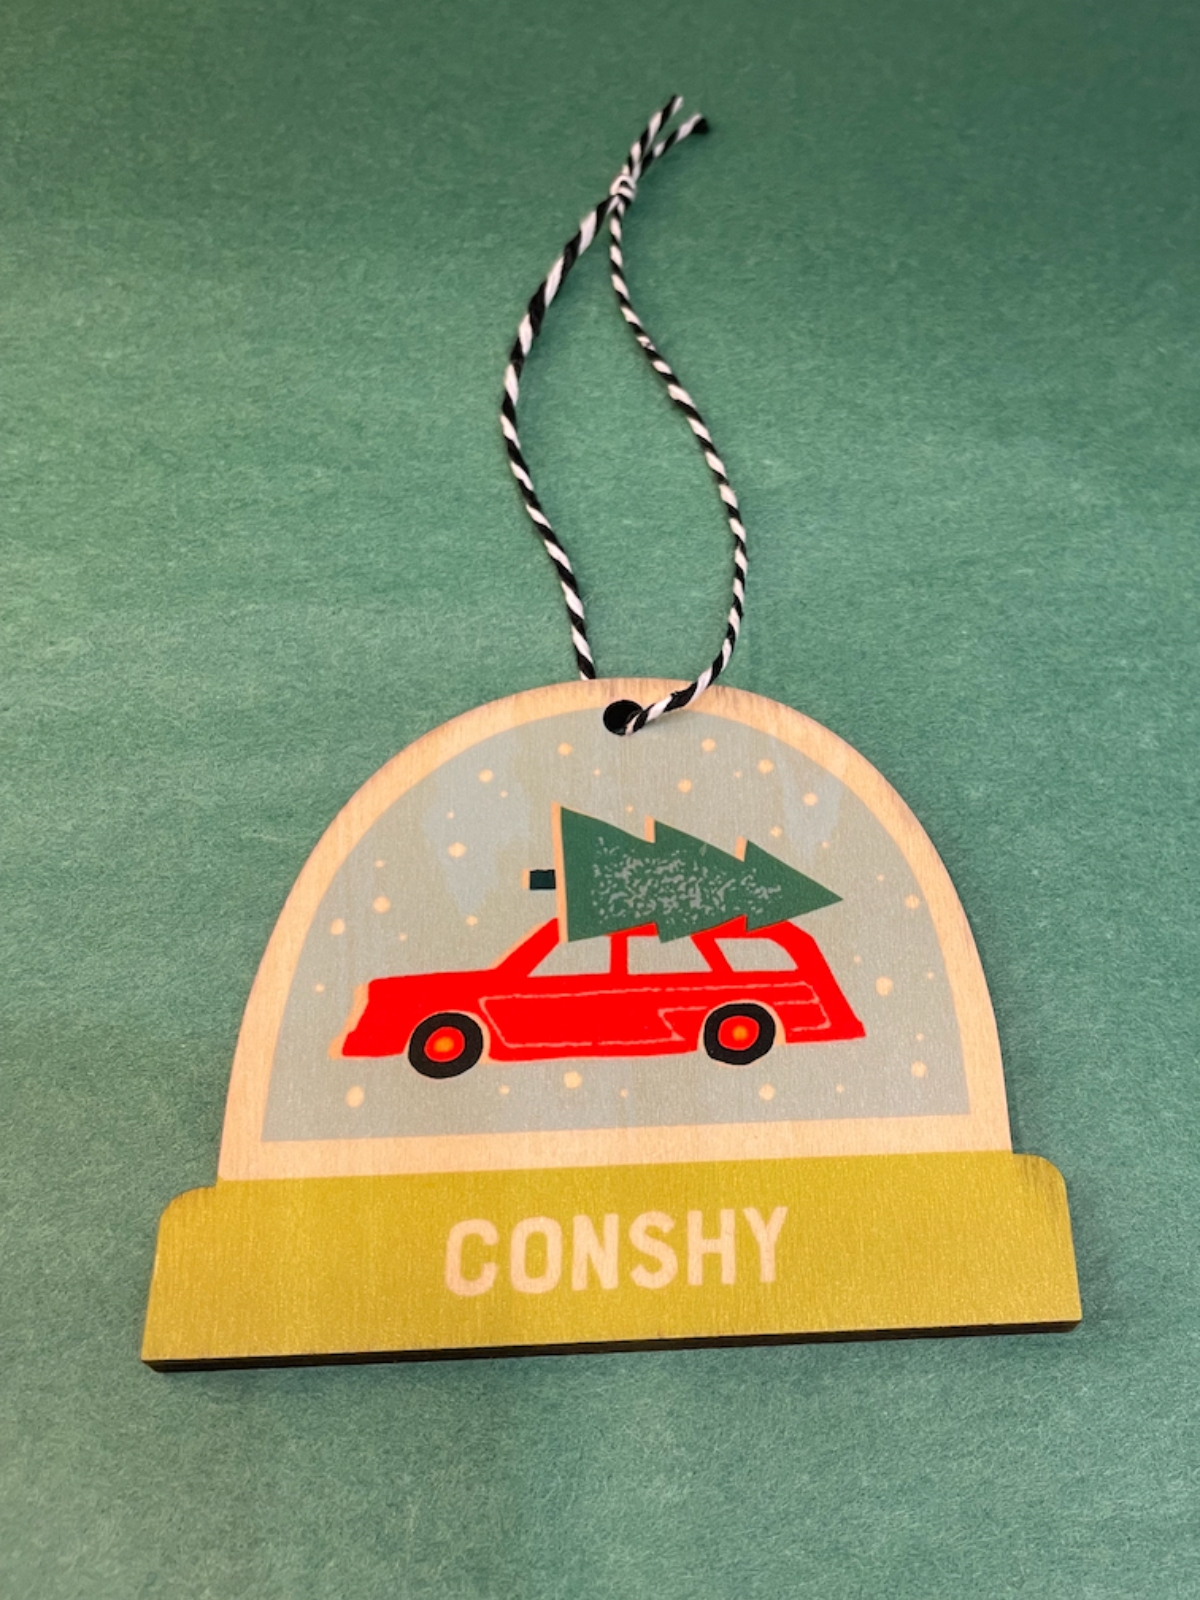 Conshy Ornament